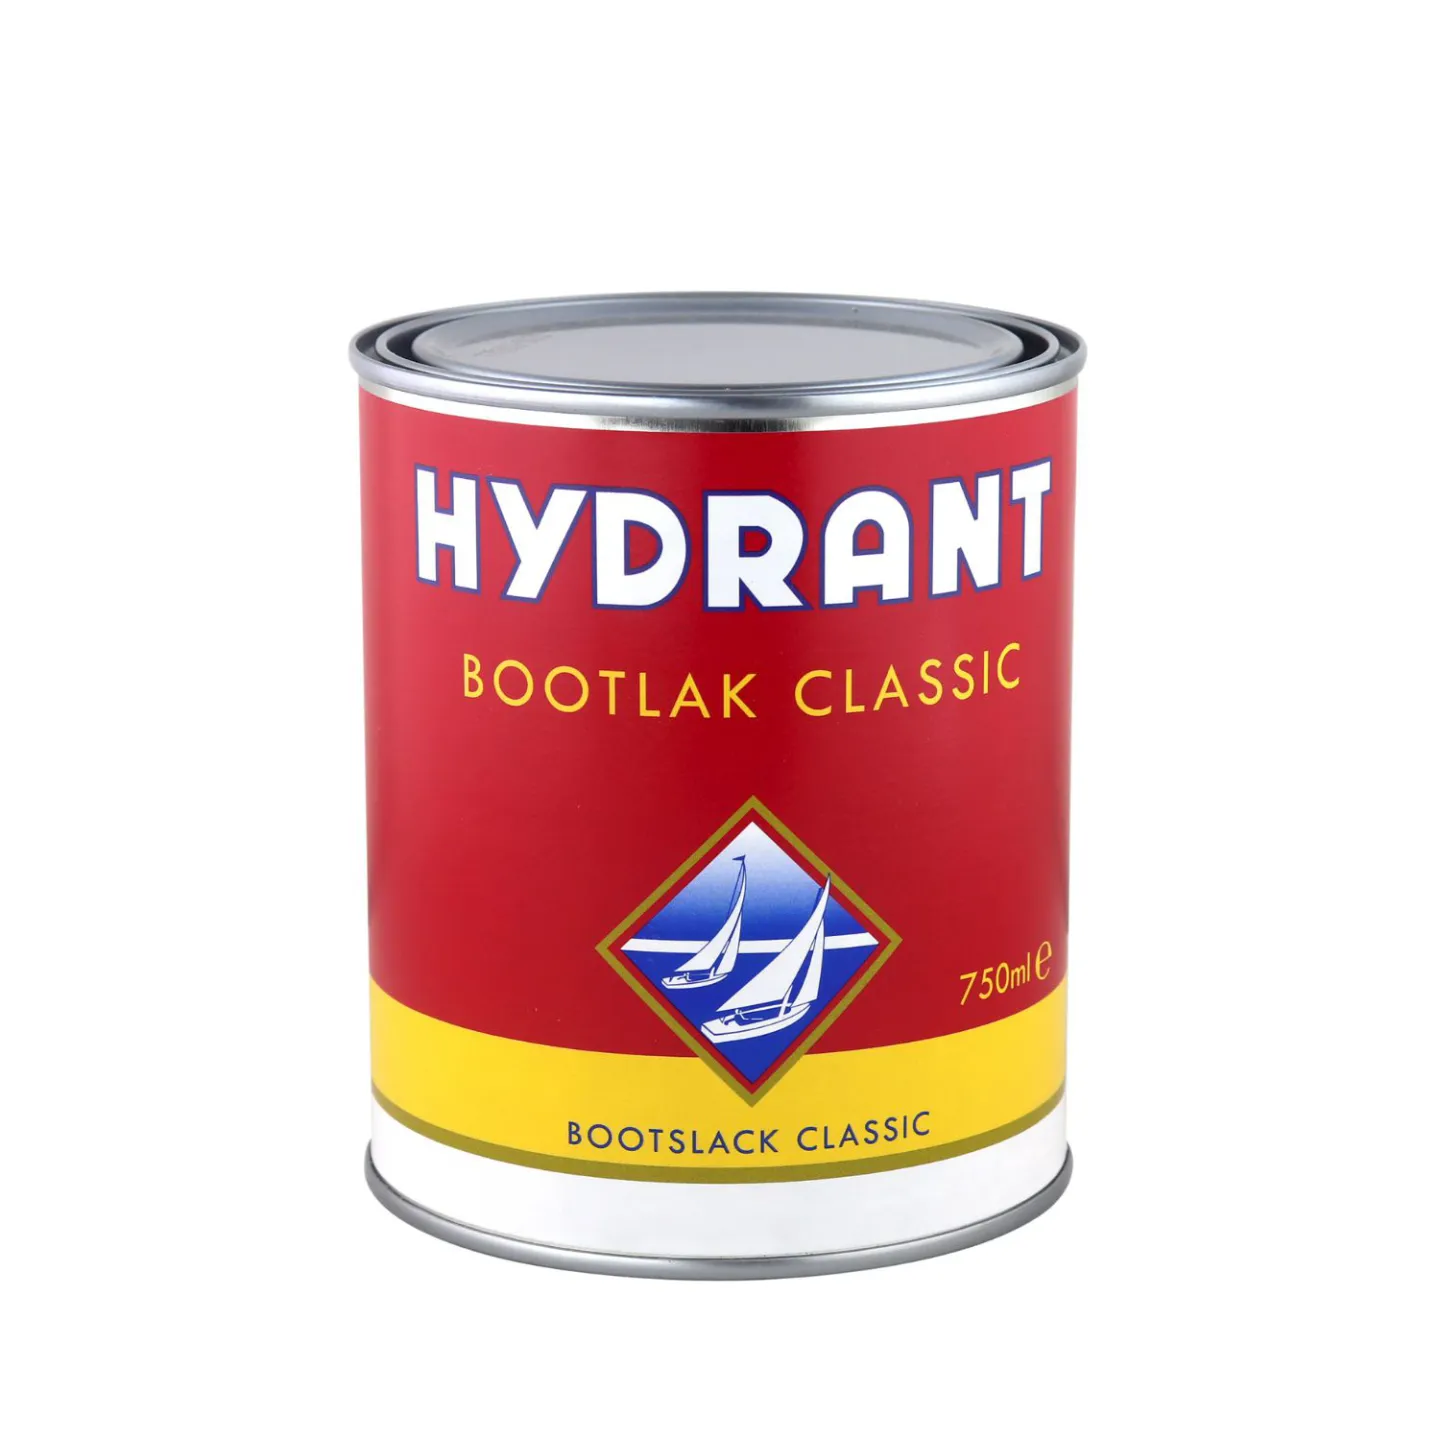 Hydrant bootlak classic blanke lak4.